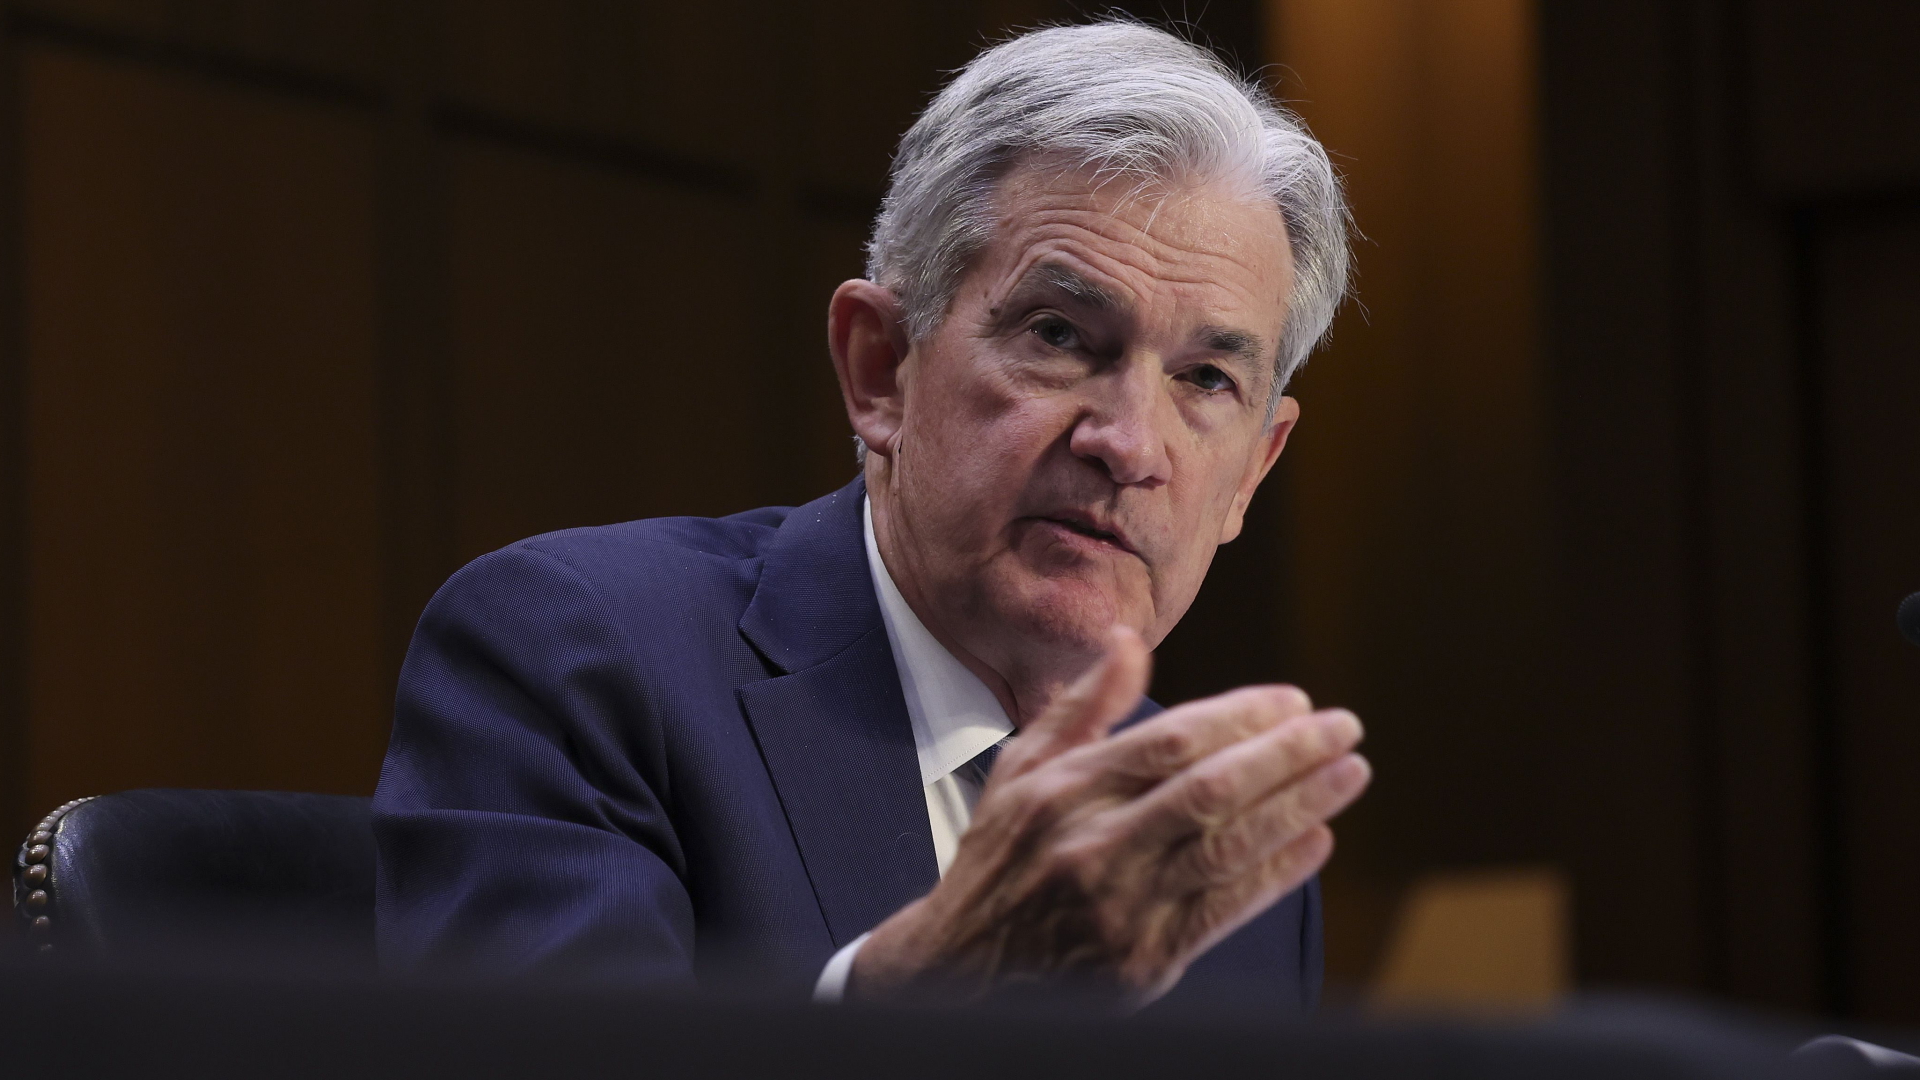 El índice adelantado cayó: el presidente de la Fed, Powell, envía al DAX a la baja